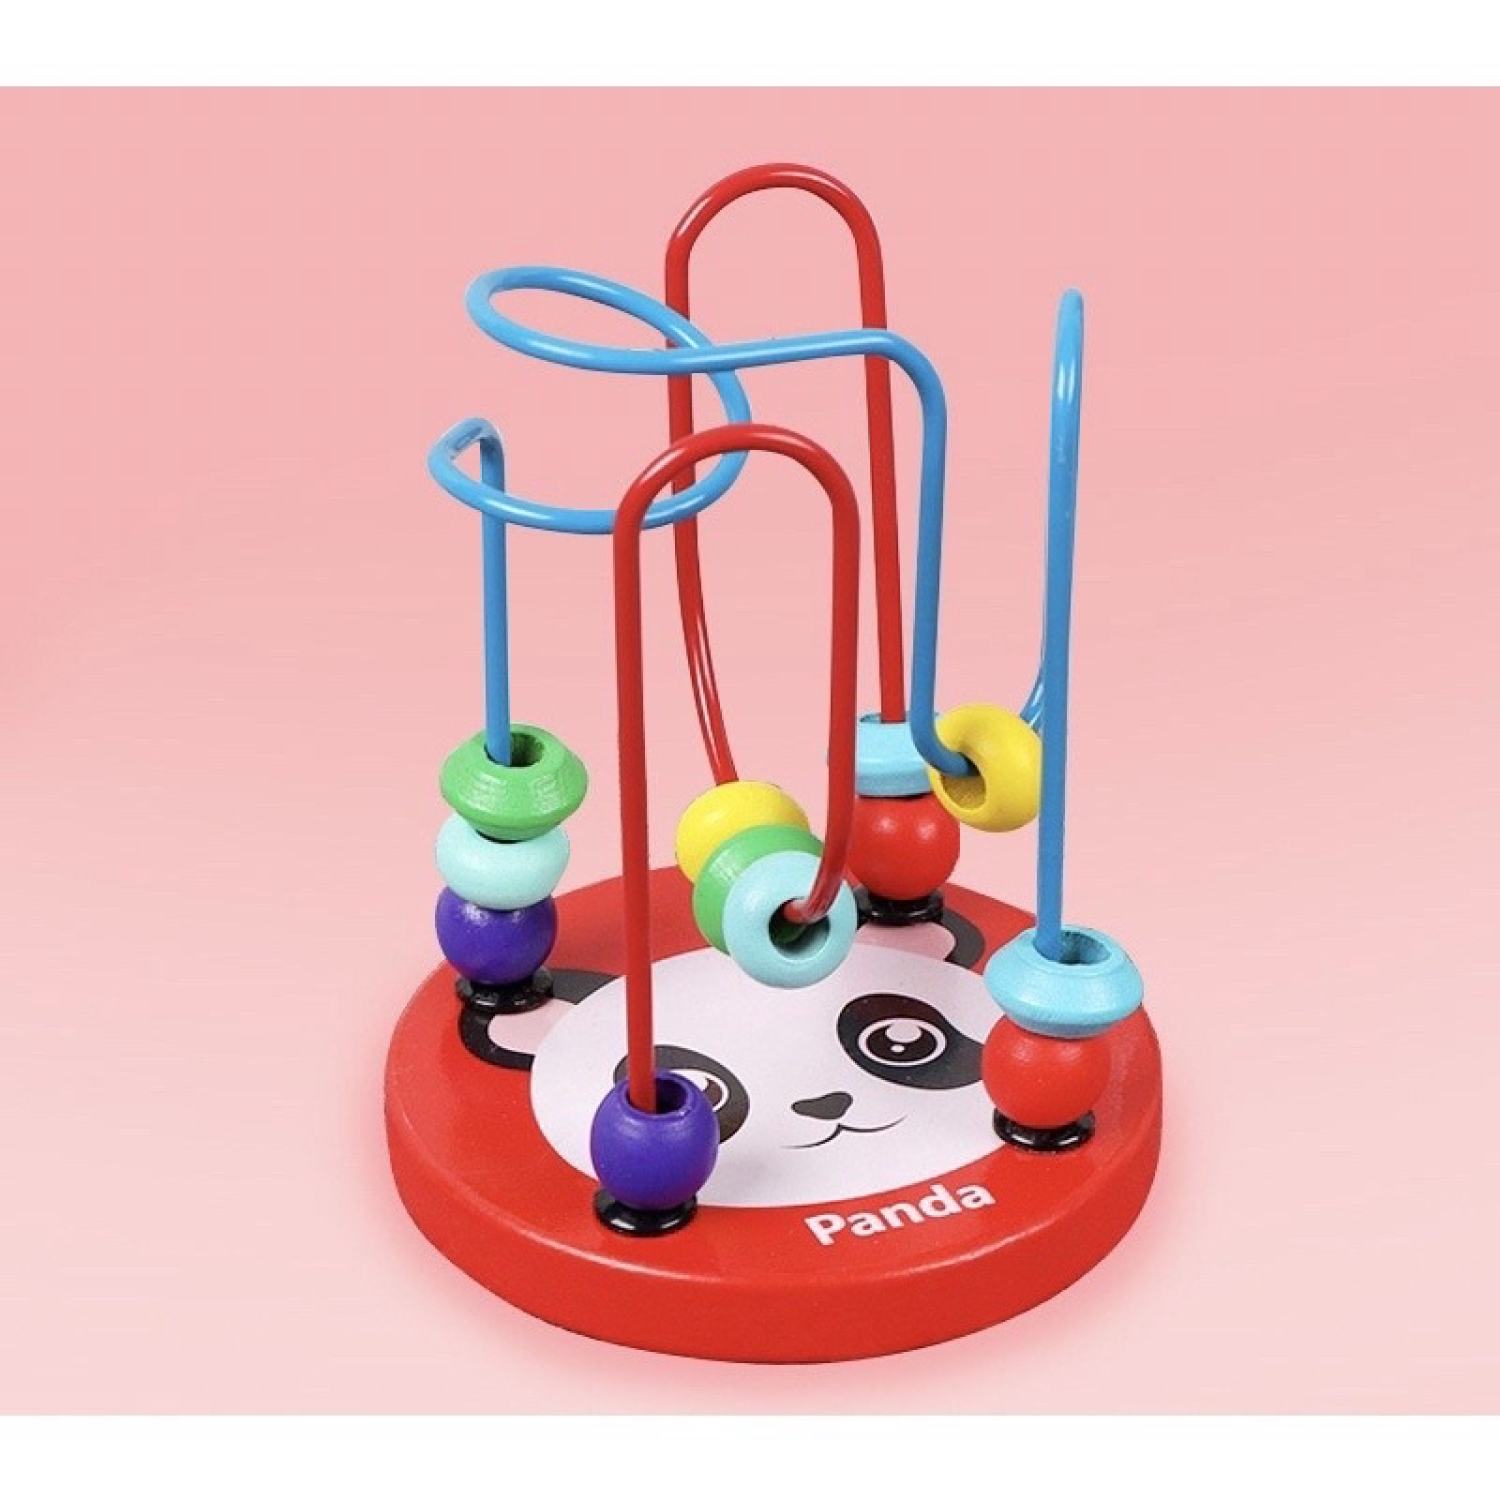 Combo 6 món đồ chơi gỗ thông minh baostore triển tư duy, trí tuệ cho bé - ảnh sản phẩm 4